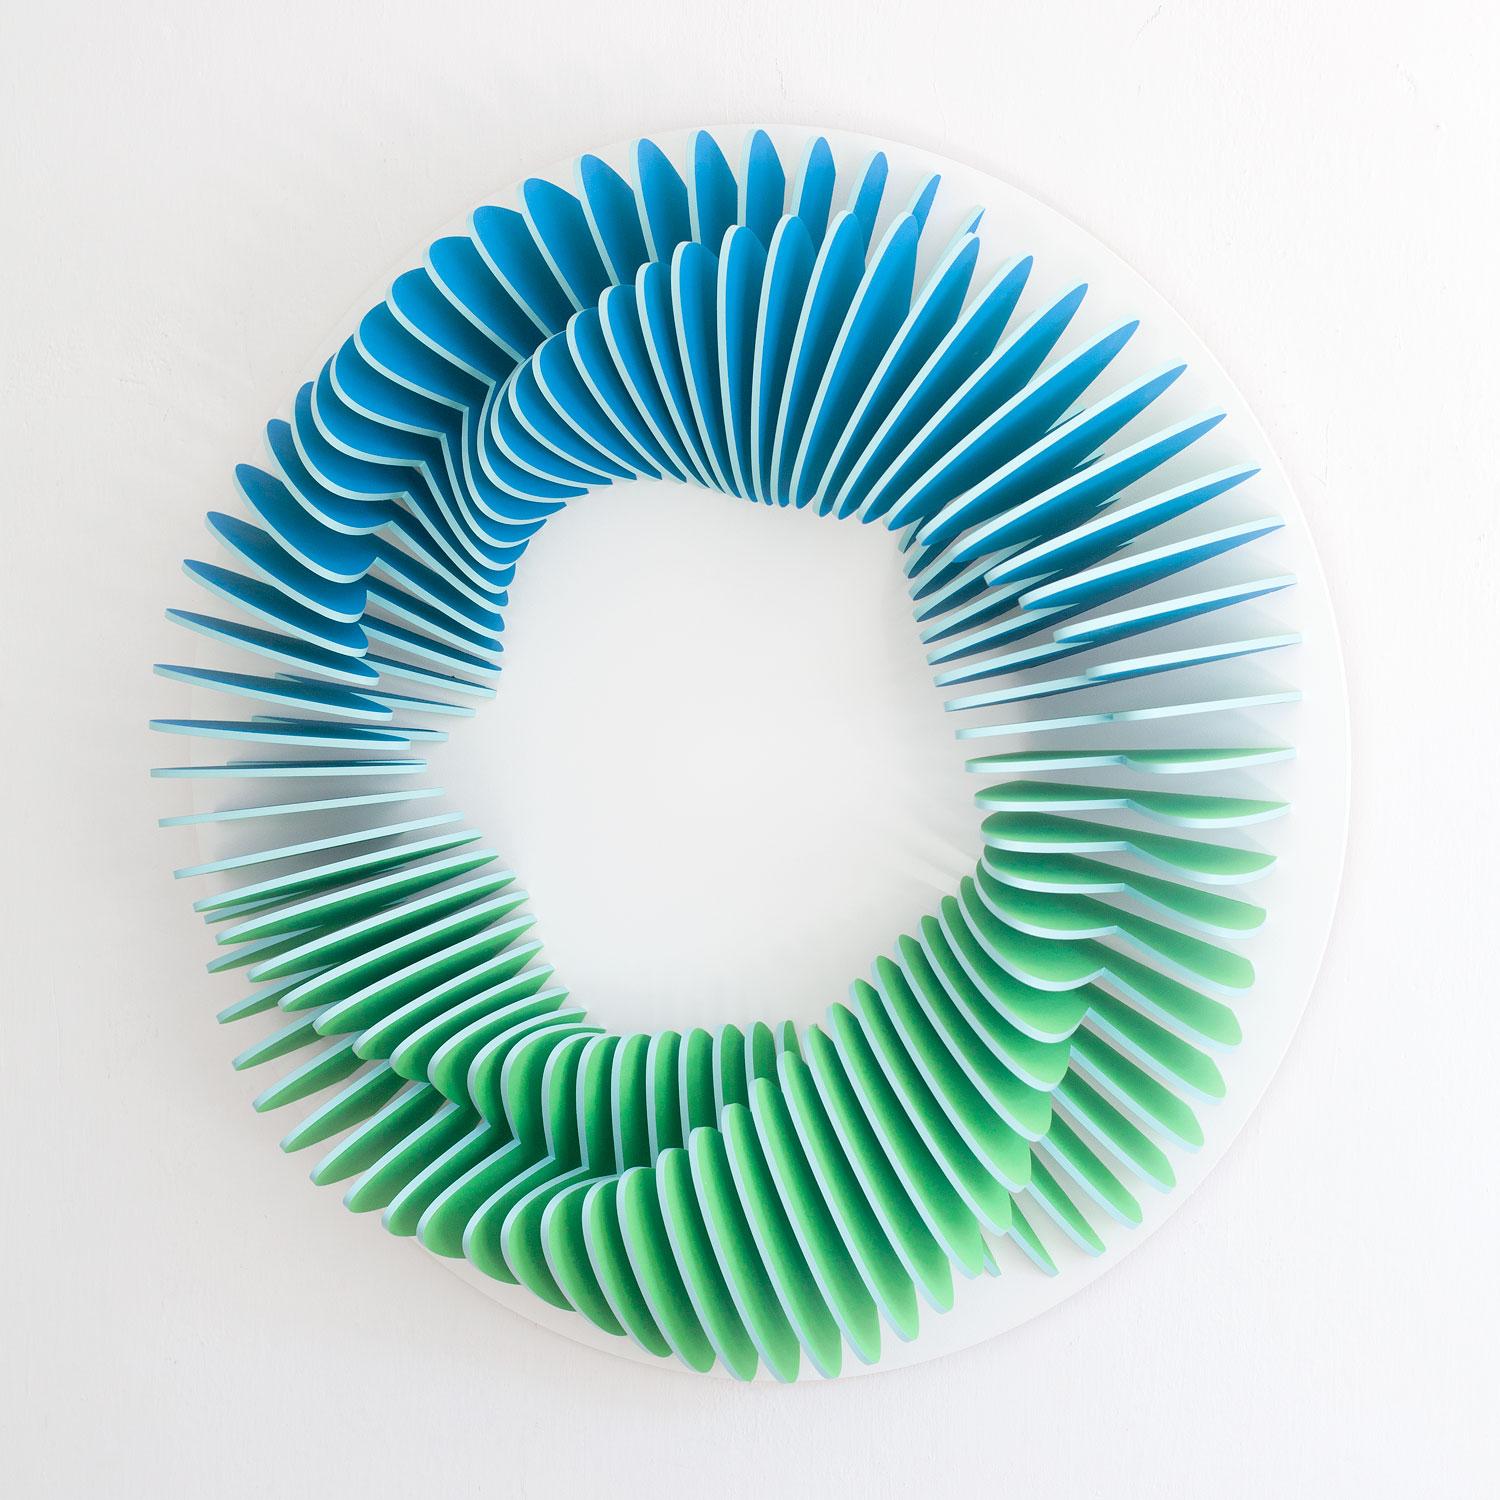 Anna Kruhelska Abstract Sculpture - CC 102 - Blue green abstract geometric 3D wall circular sculpture